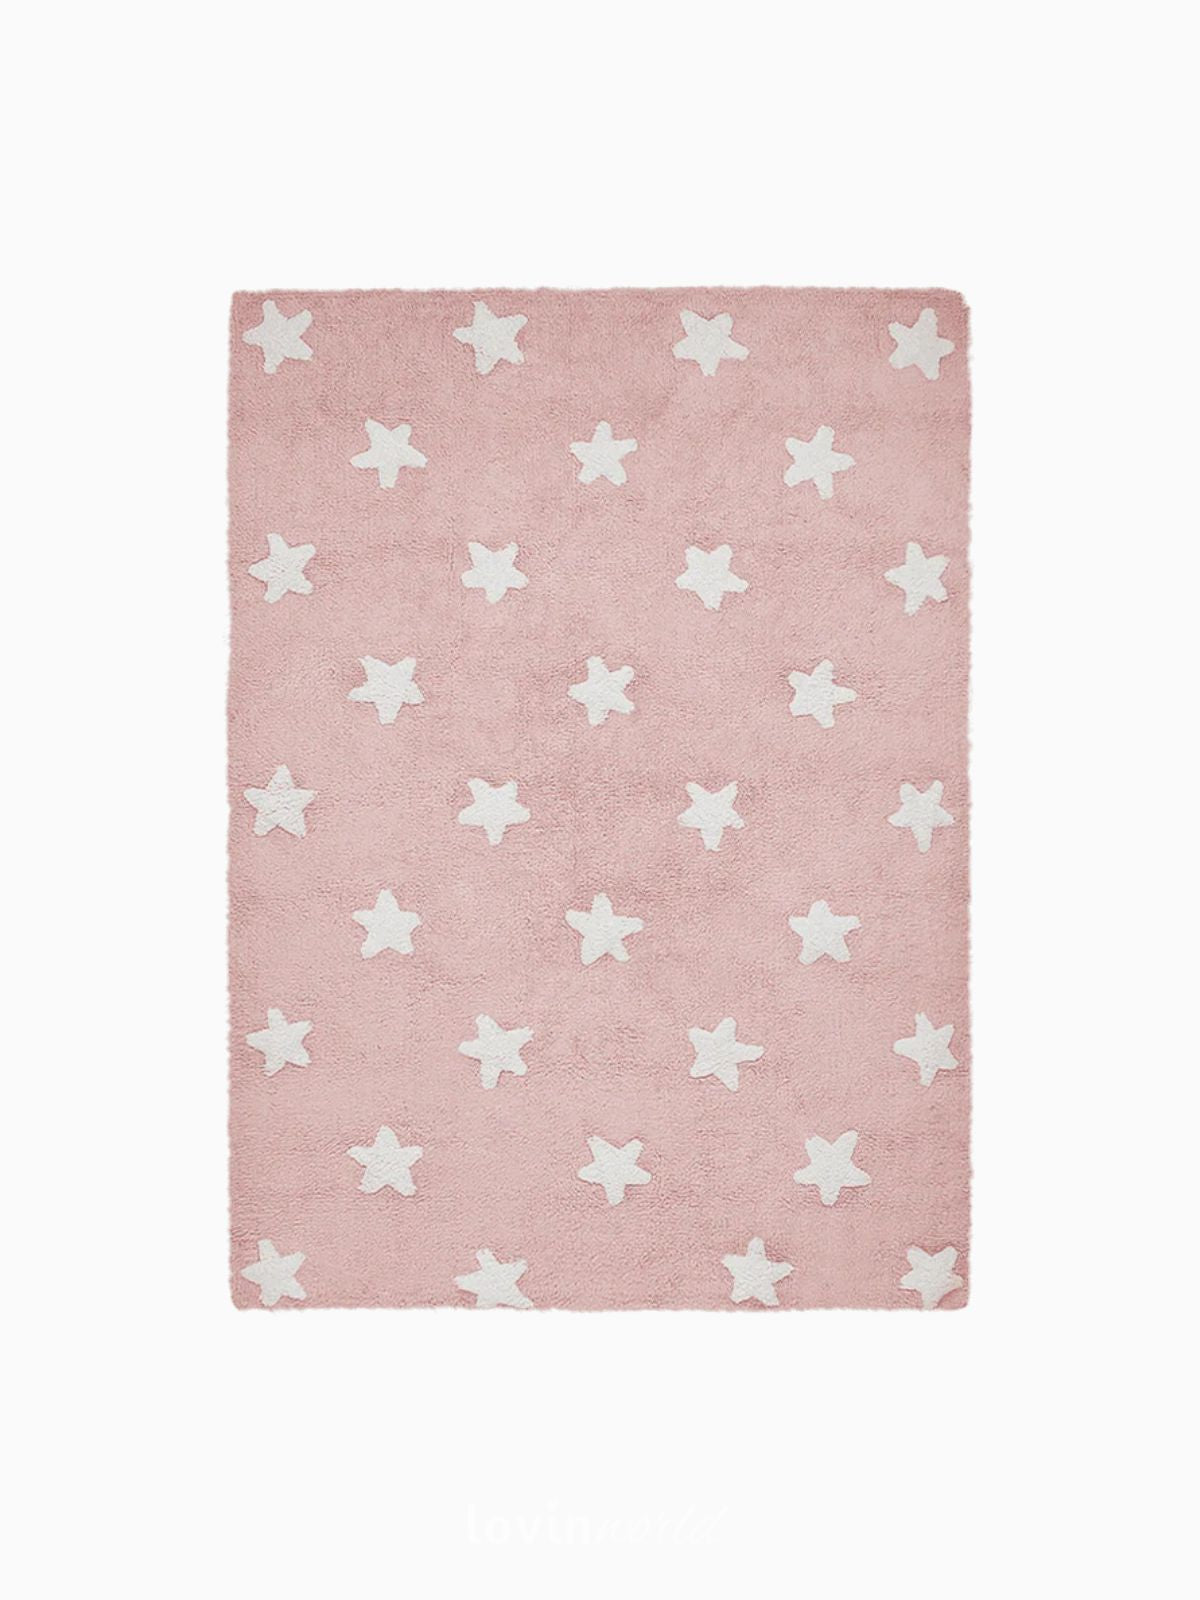 Tappeto lavabile per bambini Stars in colore rosa 120x160 cm.-1